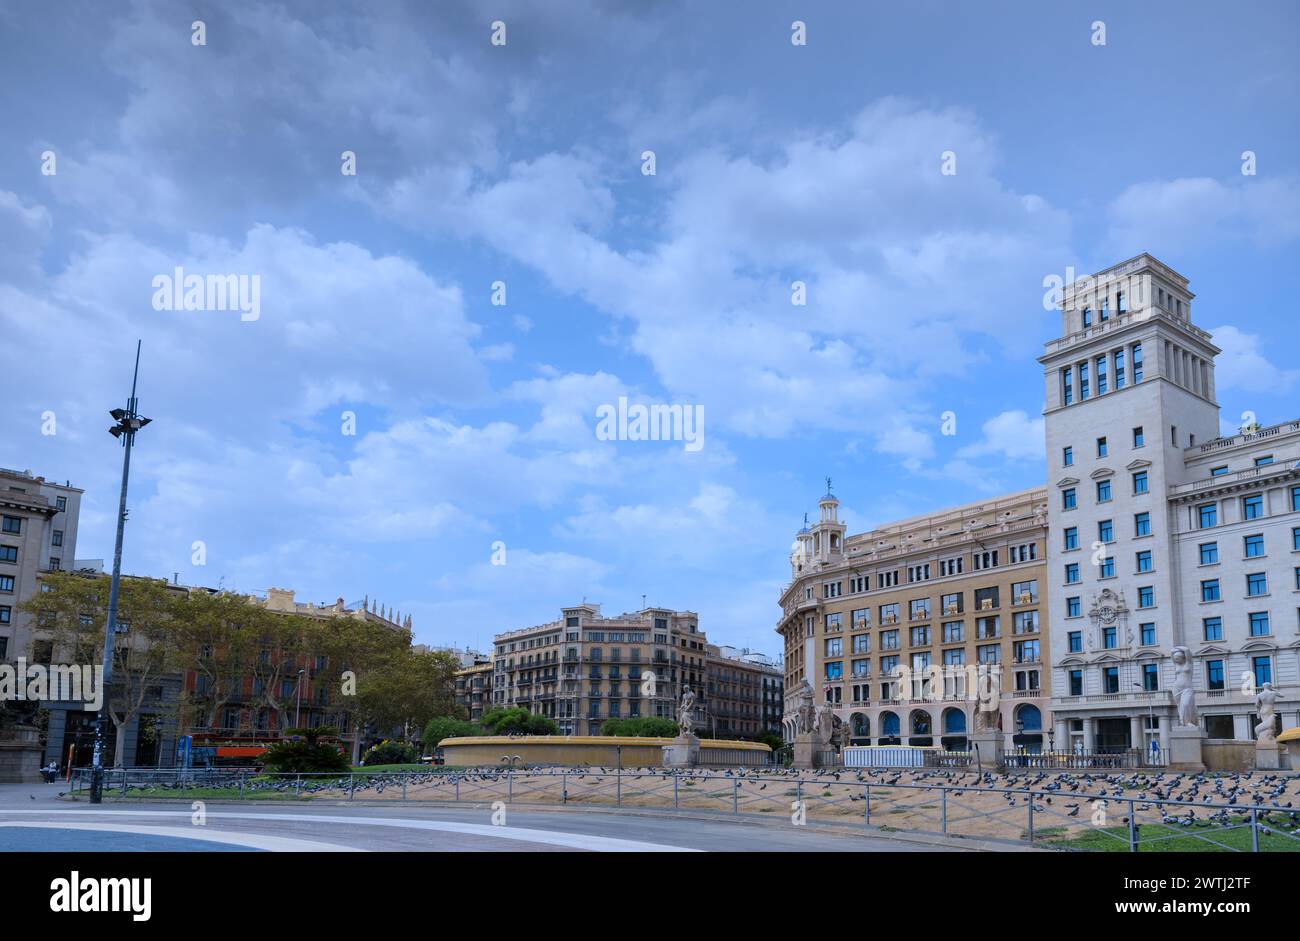 The main square in Barcelona 'Plaça de Catalunya' (Catalonia Square), Spain. Stock Photo